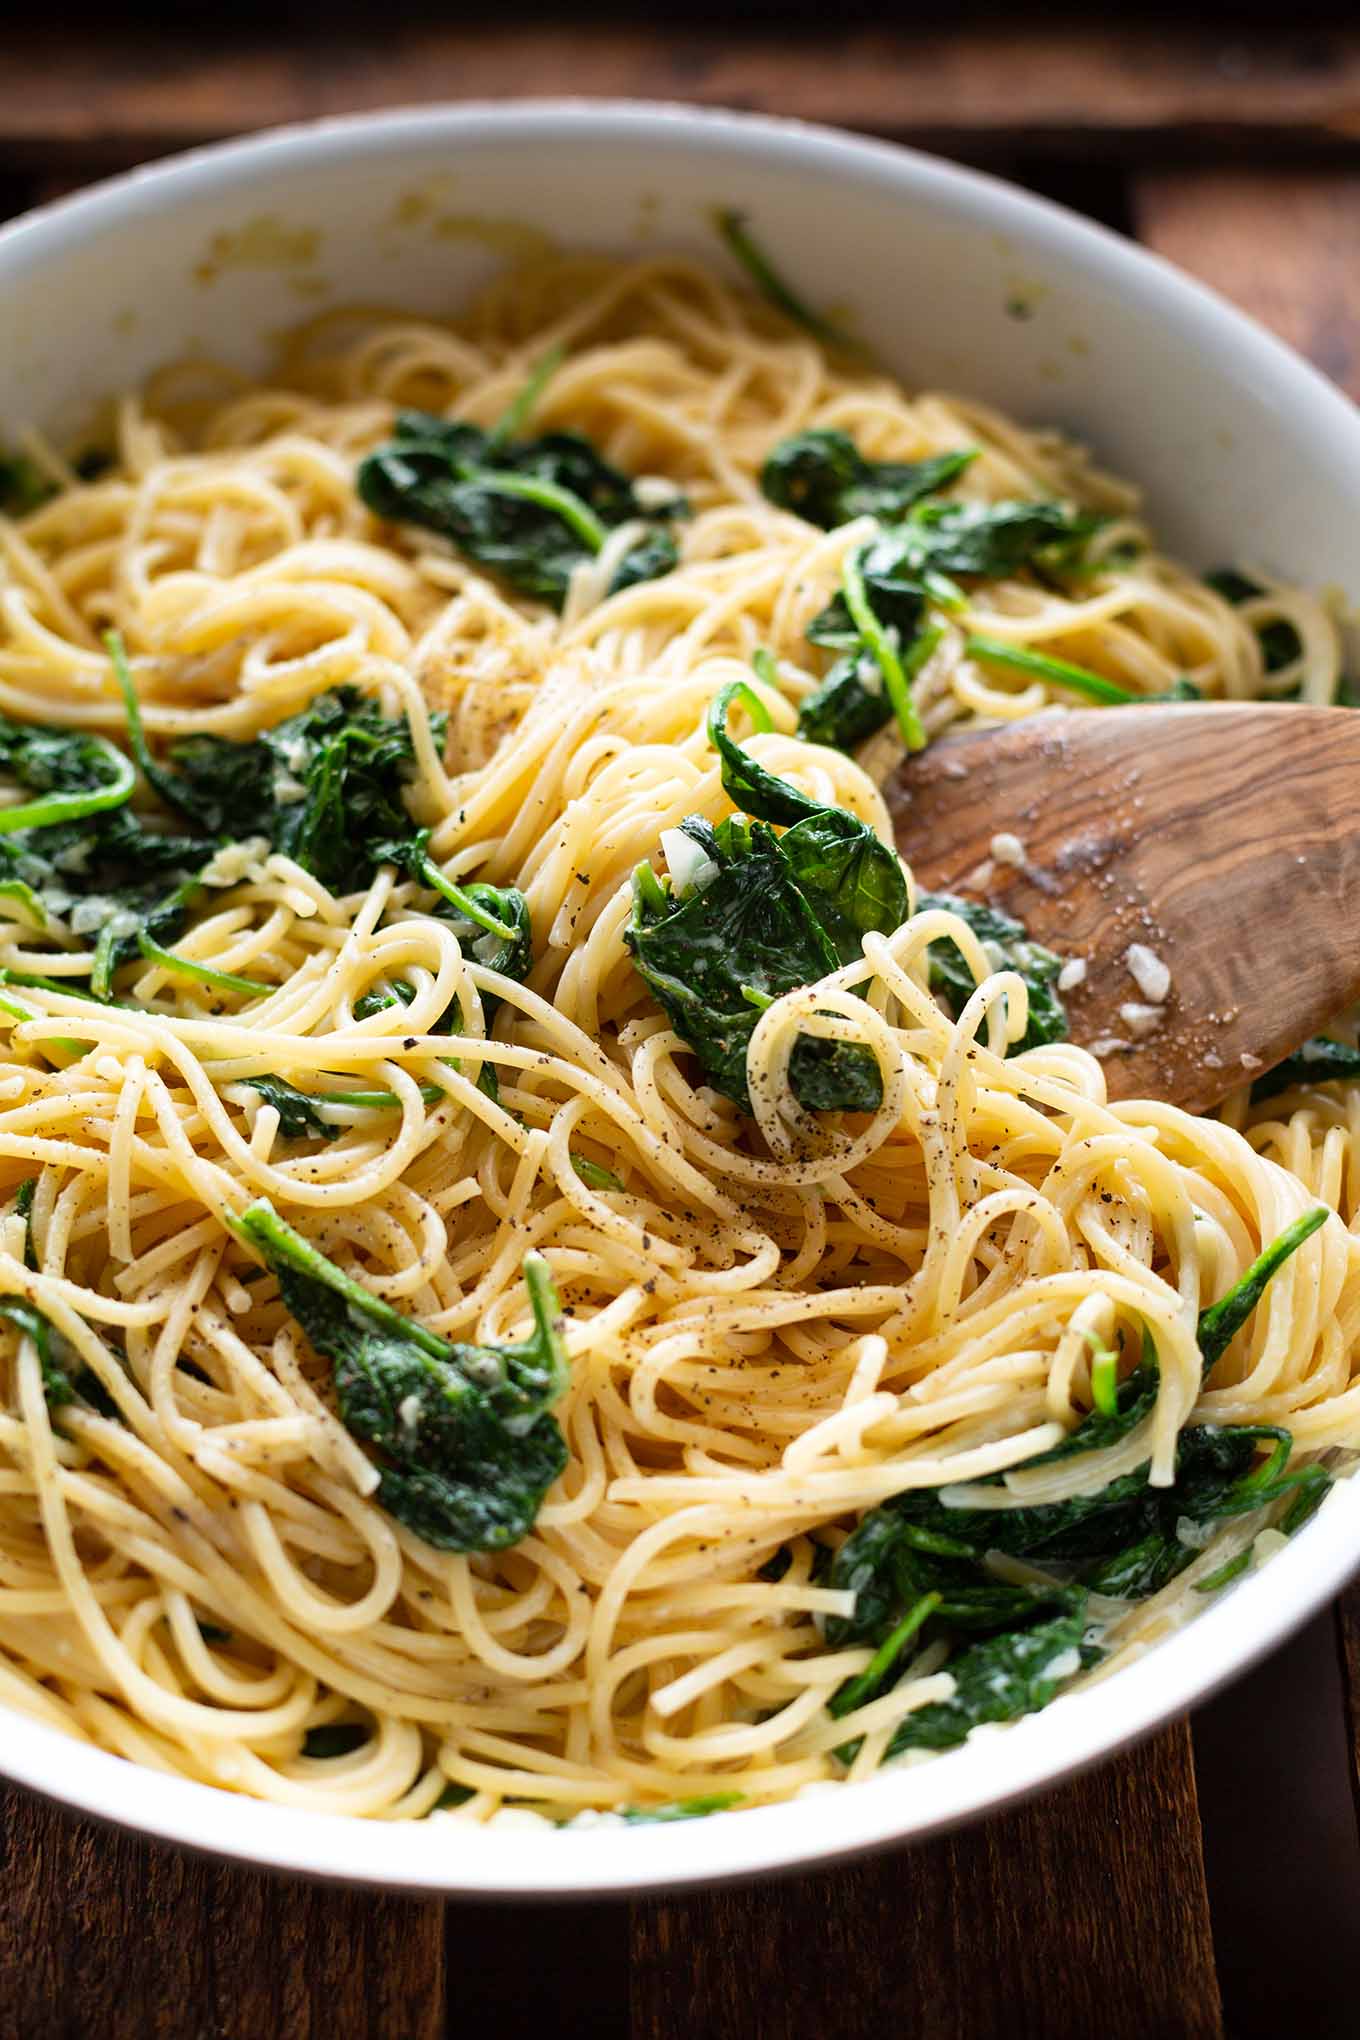 Für super leckere Spaghetti mit Spinat-Frischkäse-Sauce brauchst du nur 5 Zutaten und weniger als 20 Minuten Zeit. Ein perfektes leichtes und schnelles Abendessen für die ganze Familie. Kochkarussell - dein Foodblog für schnelle und einfache Feierabendküche.